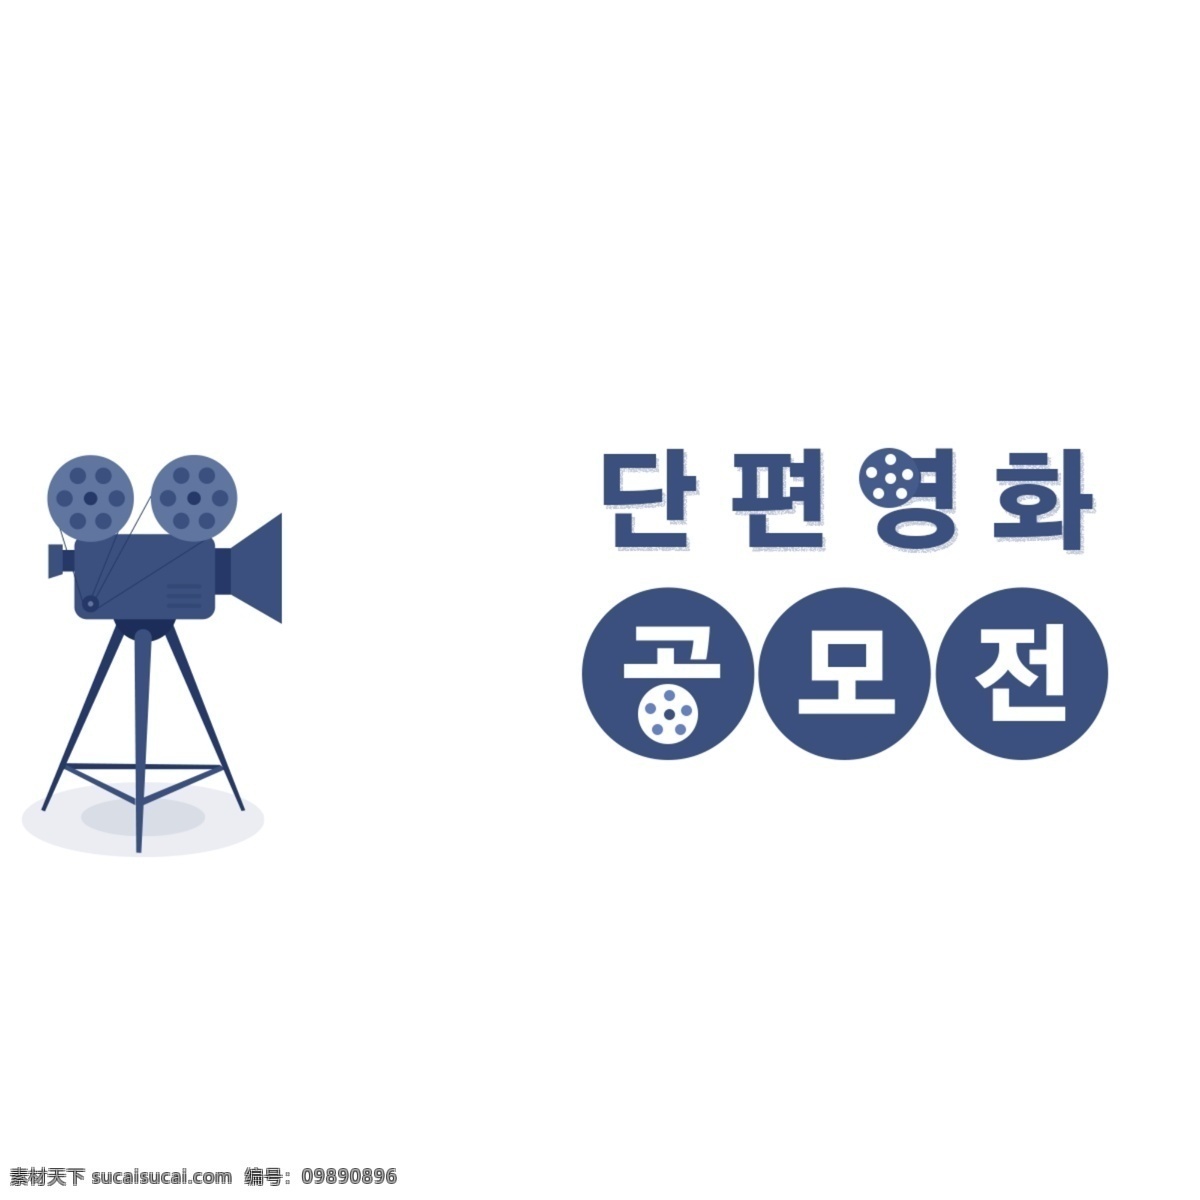 韩国语 短片 大奖赛 韩国字体 韩国人 字形 白色和蓝色 字符